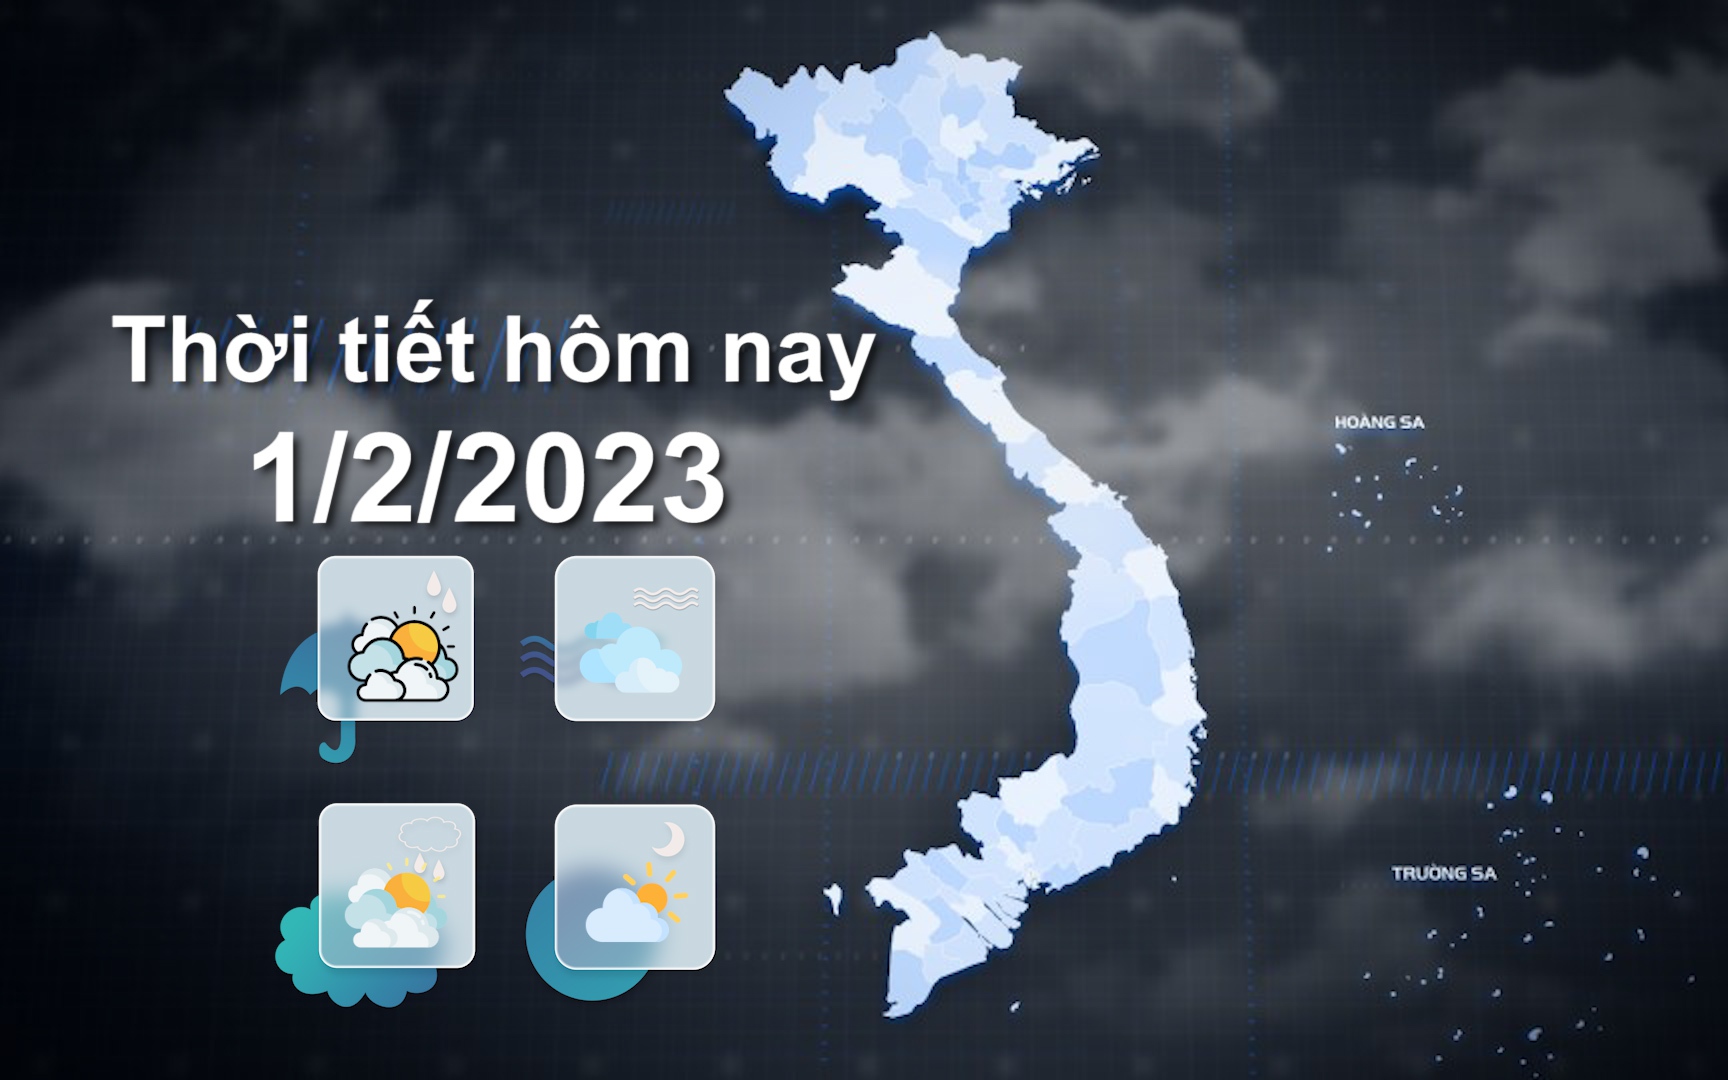 Thời tiết hôm nay 1/2/2023: Bắc Bộ trời rét, có mưa nhỏ, sương mù, ngày nắng